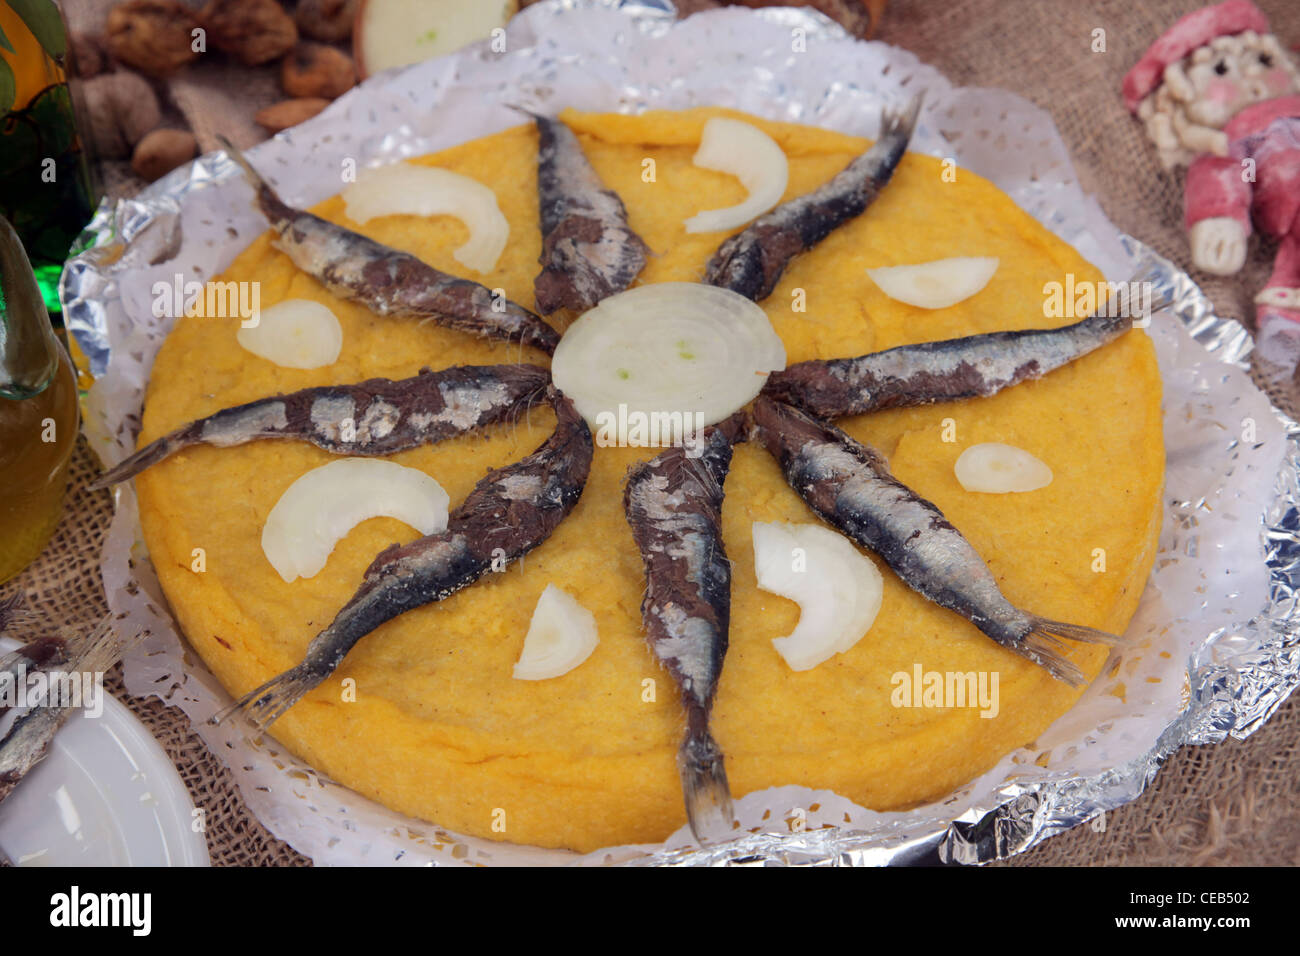 Les sardines salées avec de la polenta Banque D'Images